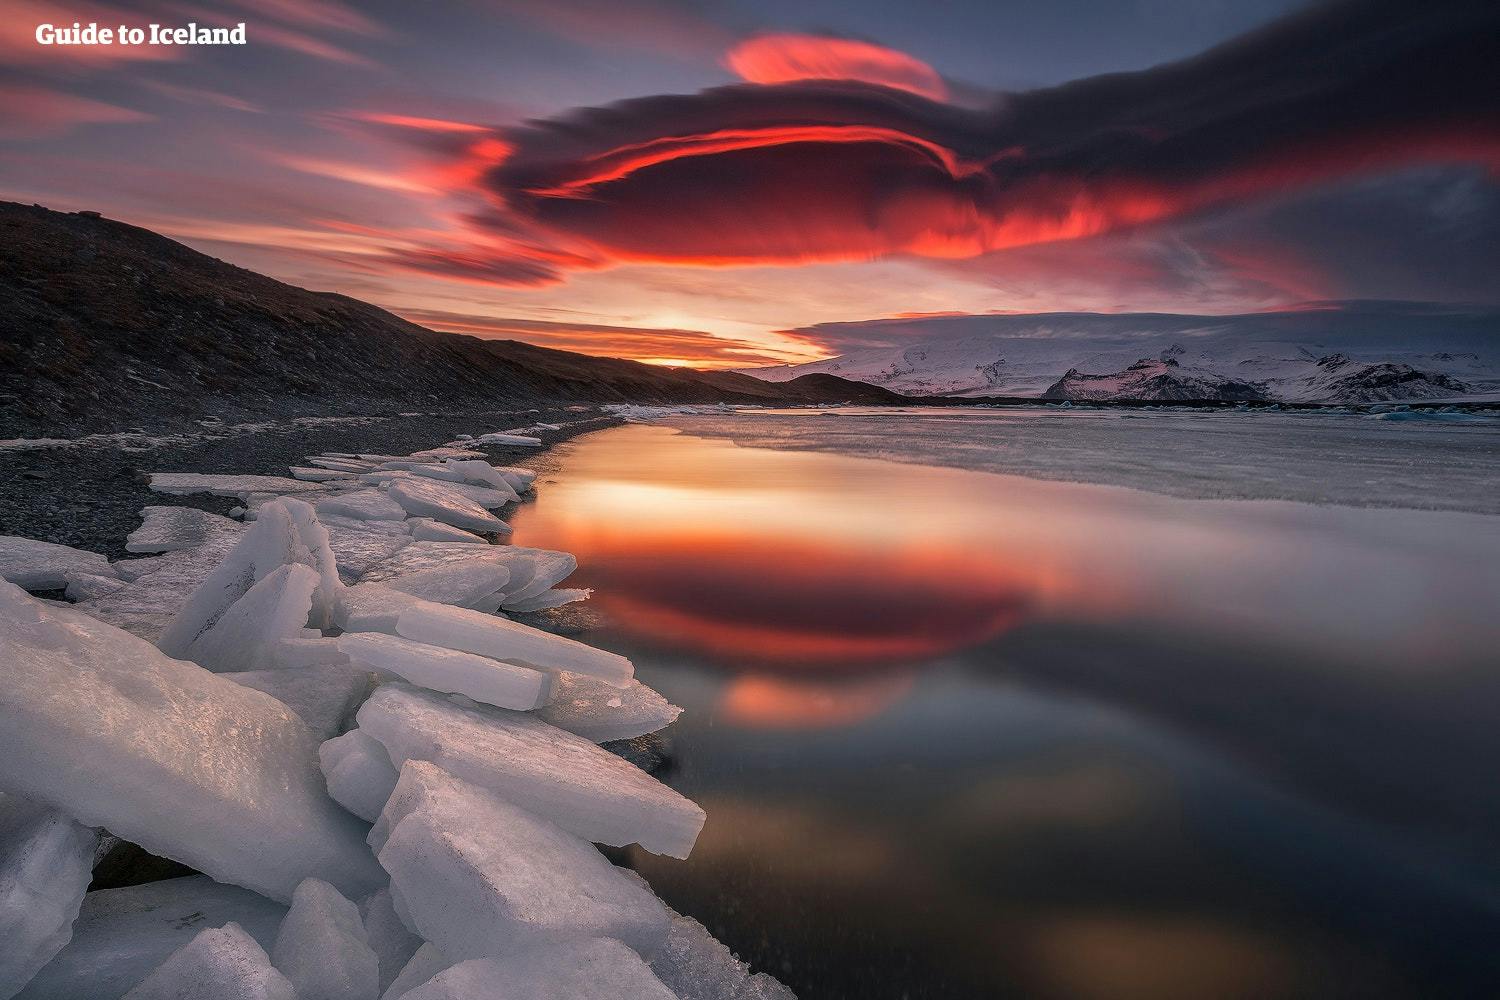 杰古沙龙冰河湖是冰岛当之无愧的自然王冠明珠。